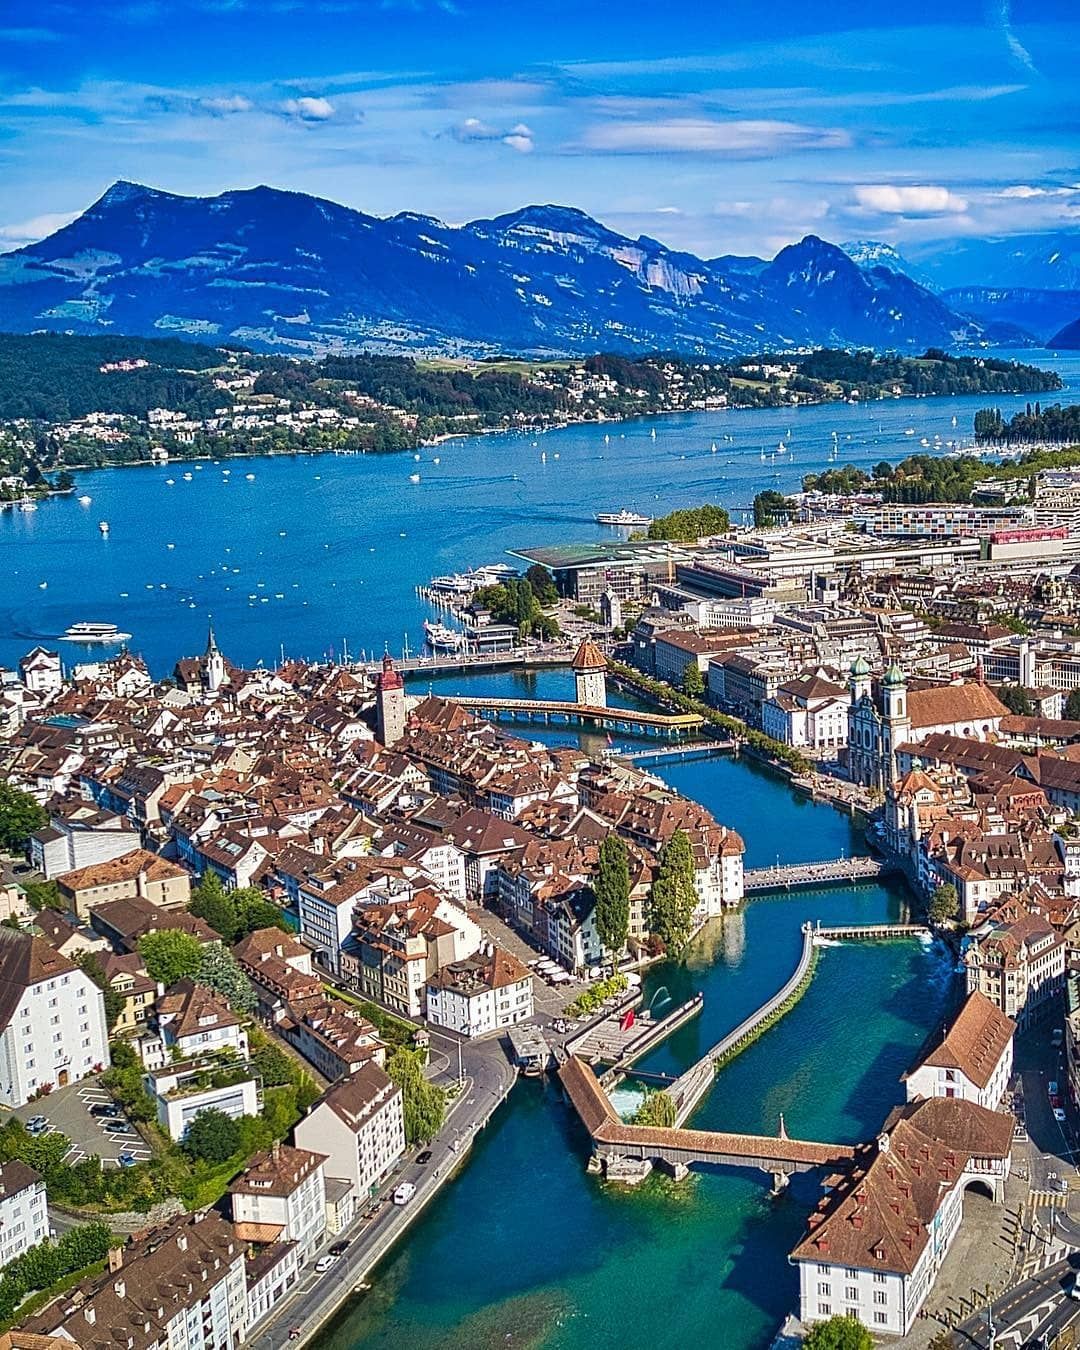 Lucerne, Switzerland 🇨🇭